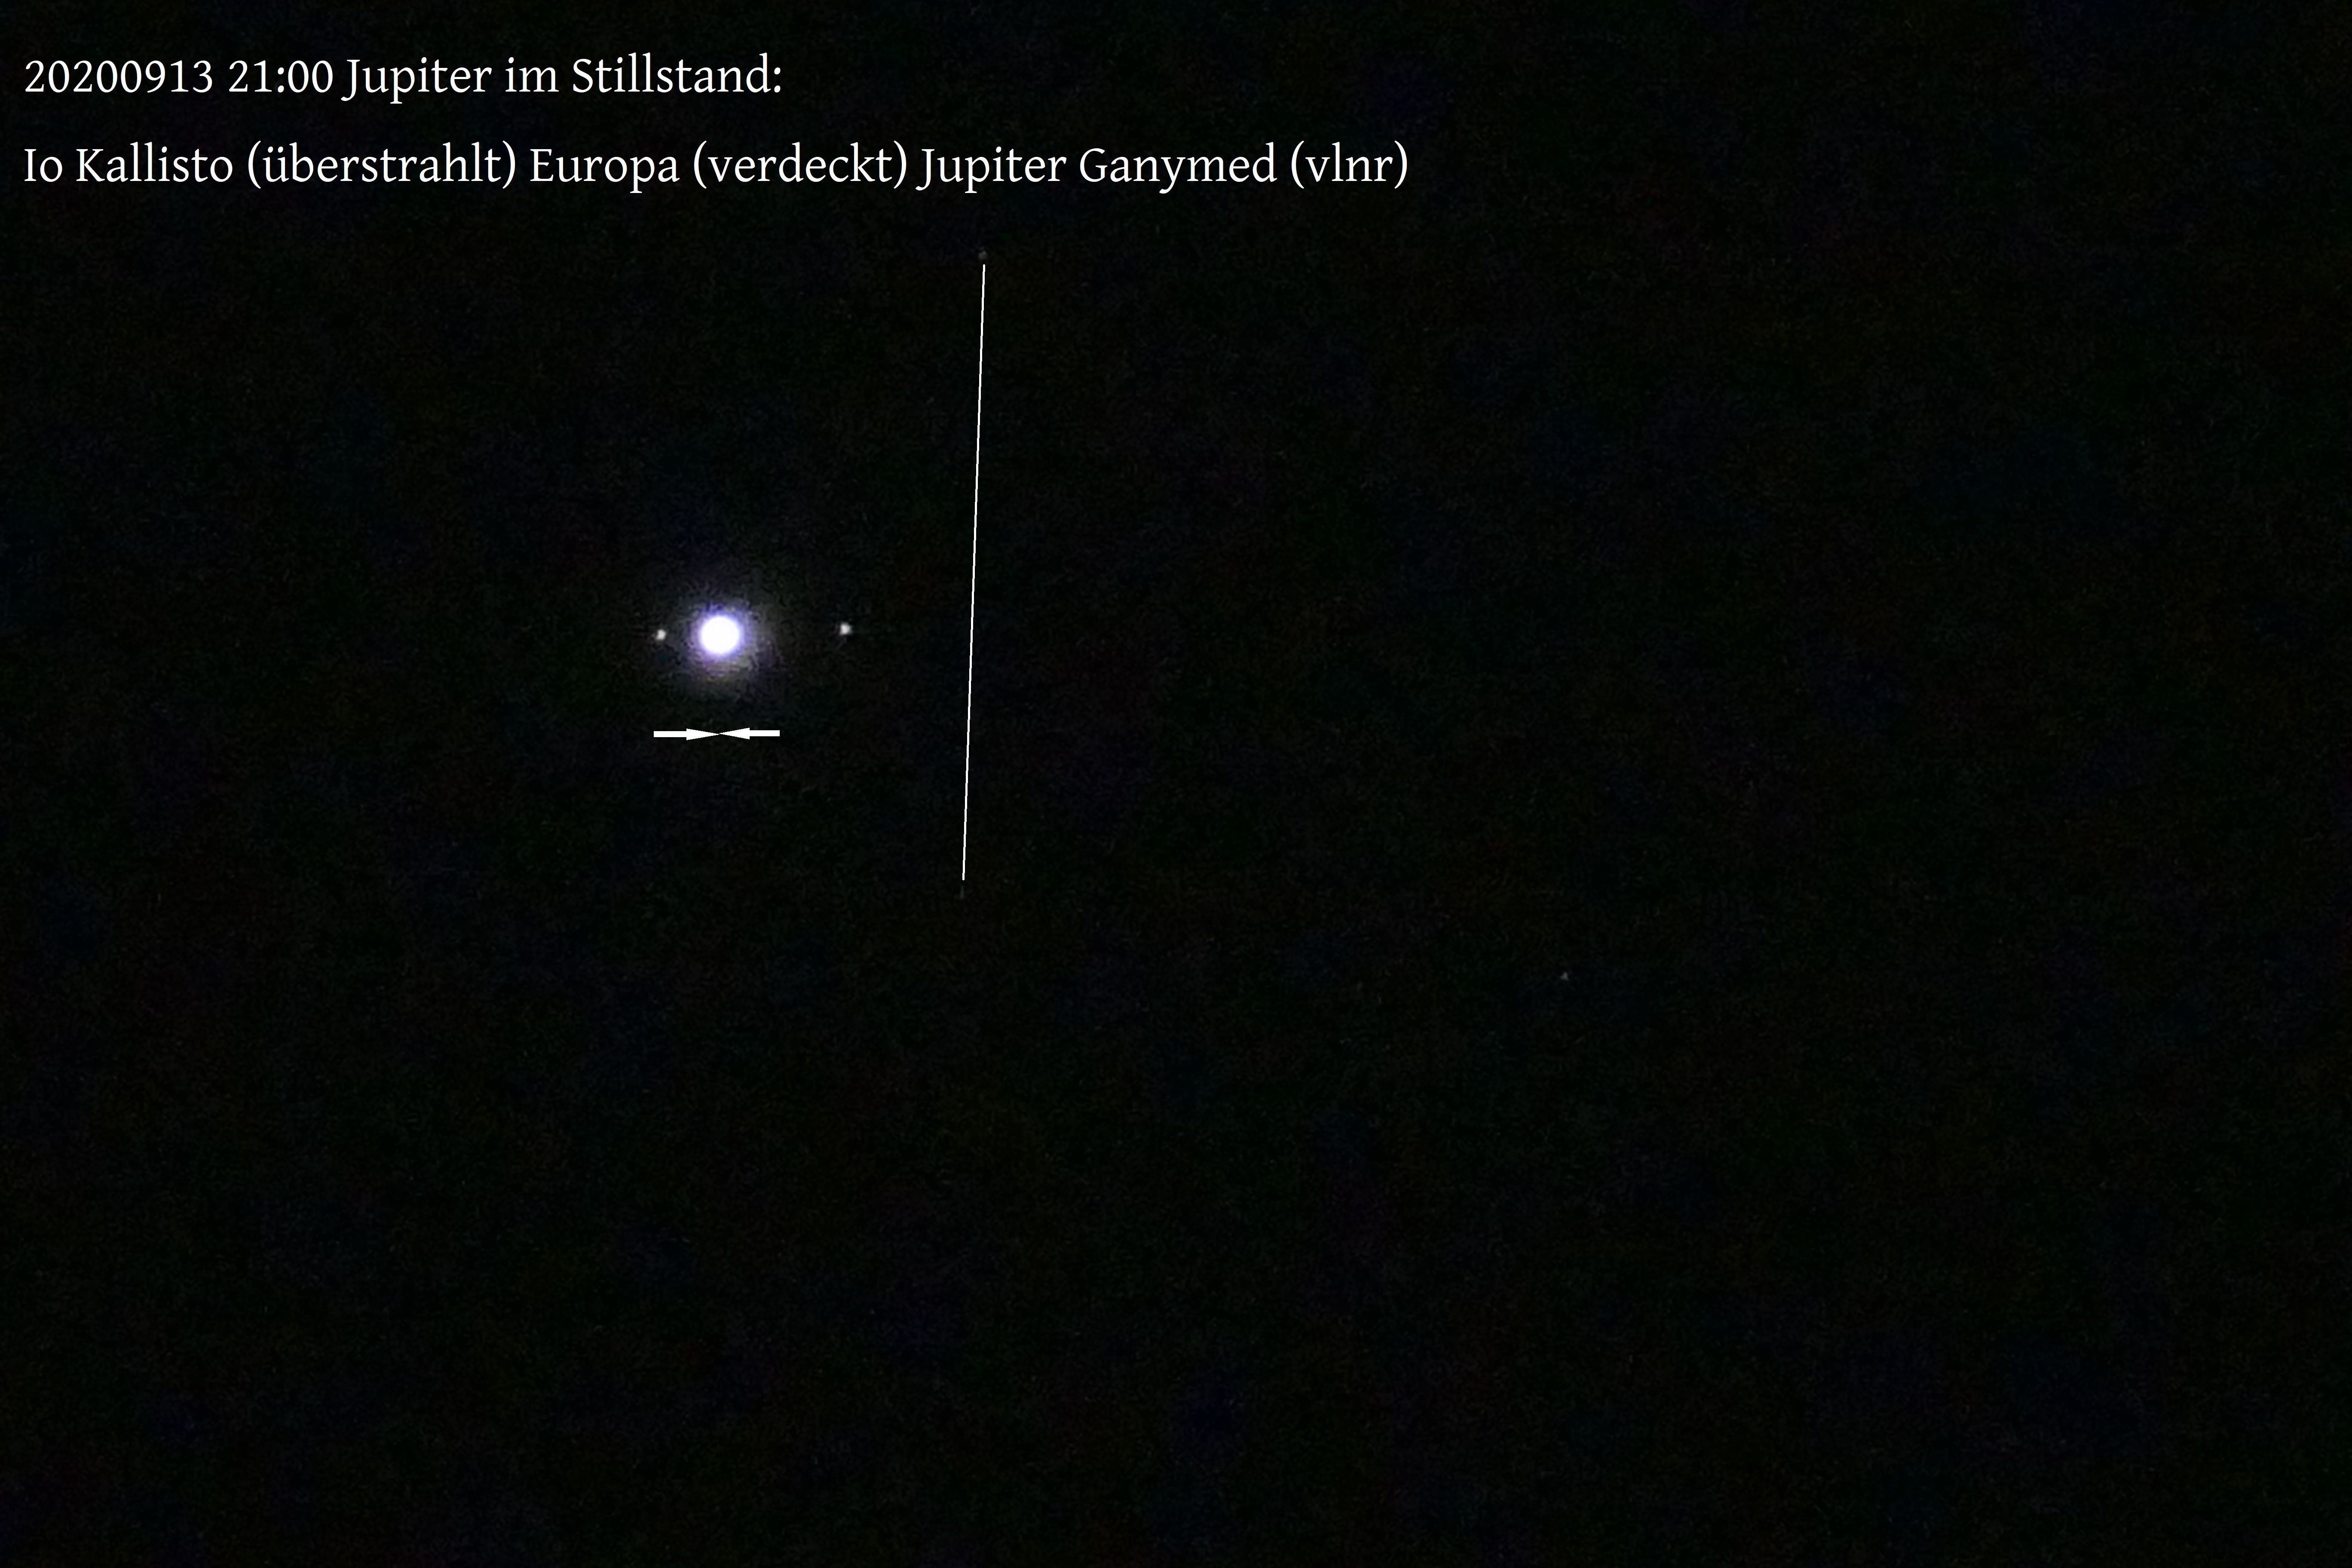 Abb. 2: Am 13.9. war die Rückläufigkeit beendet und Jupiter vor dem Sternenhintergrund stationär (im Stillstand 2); vgl. Text.